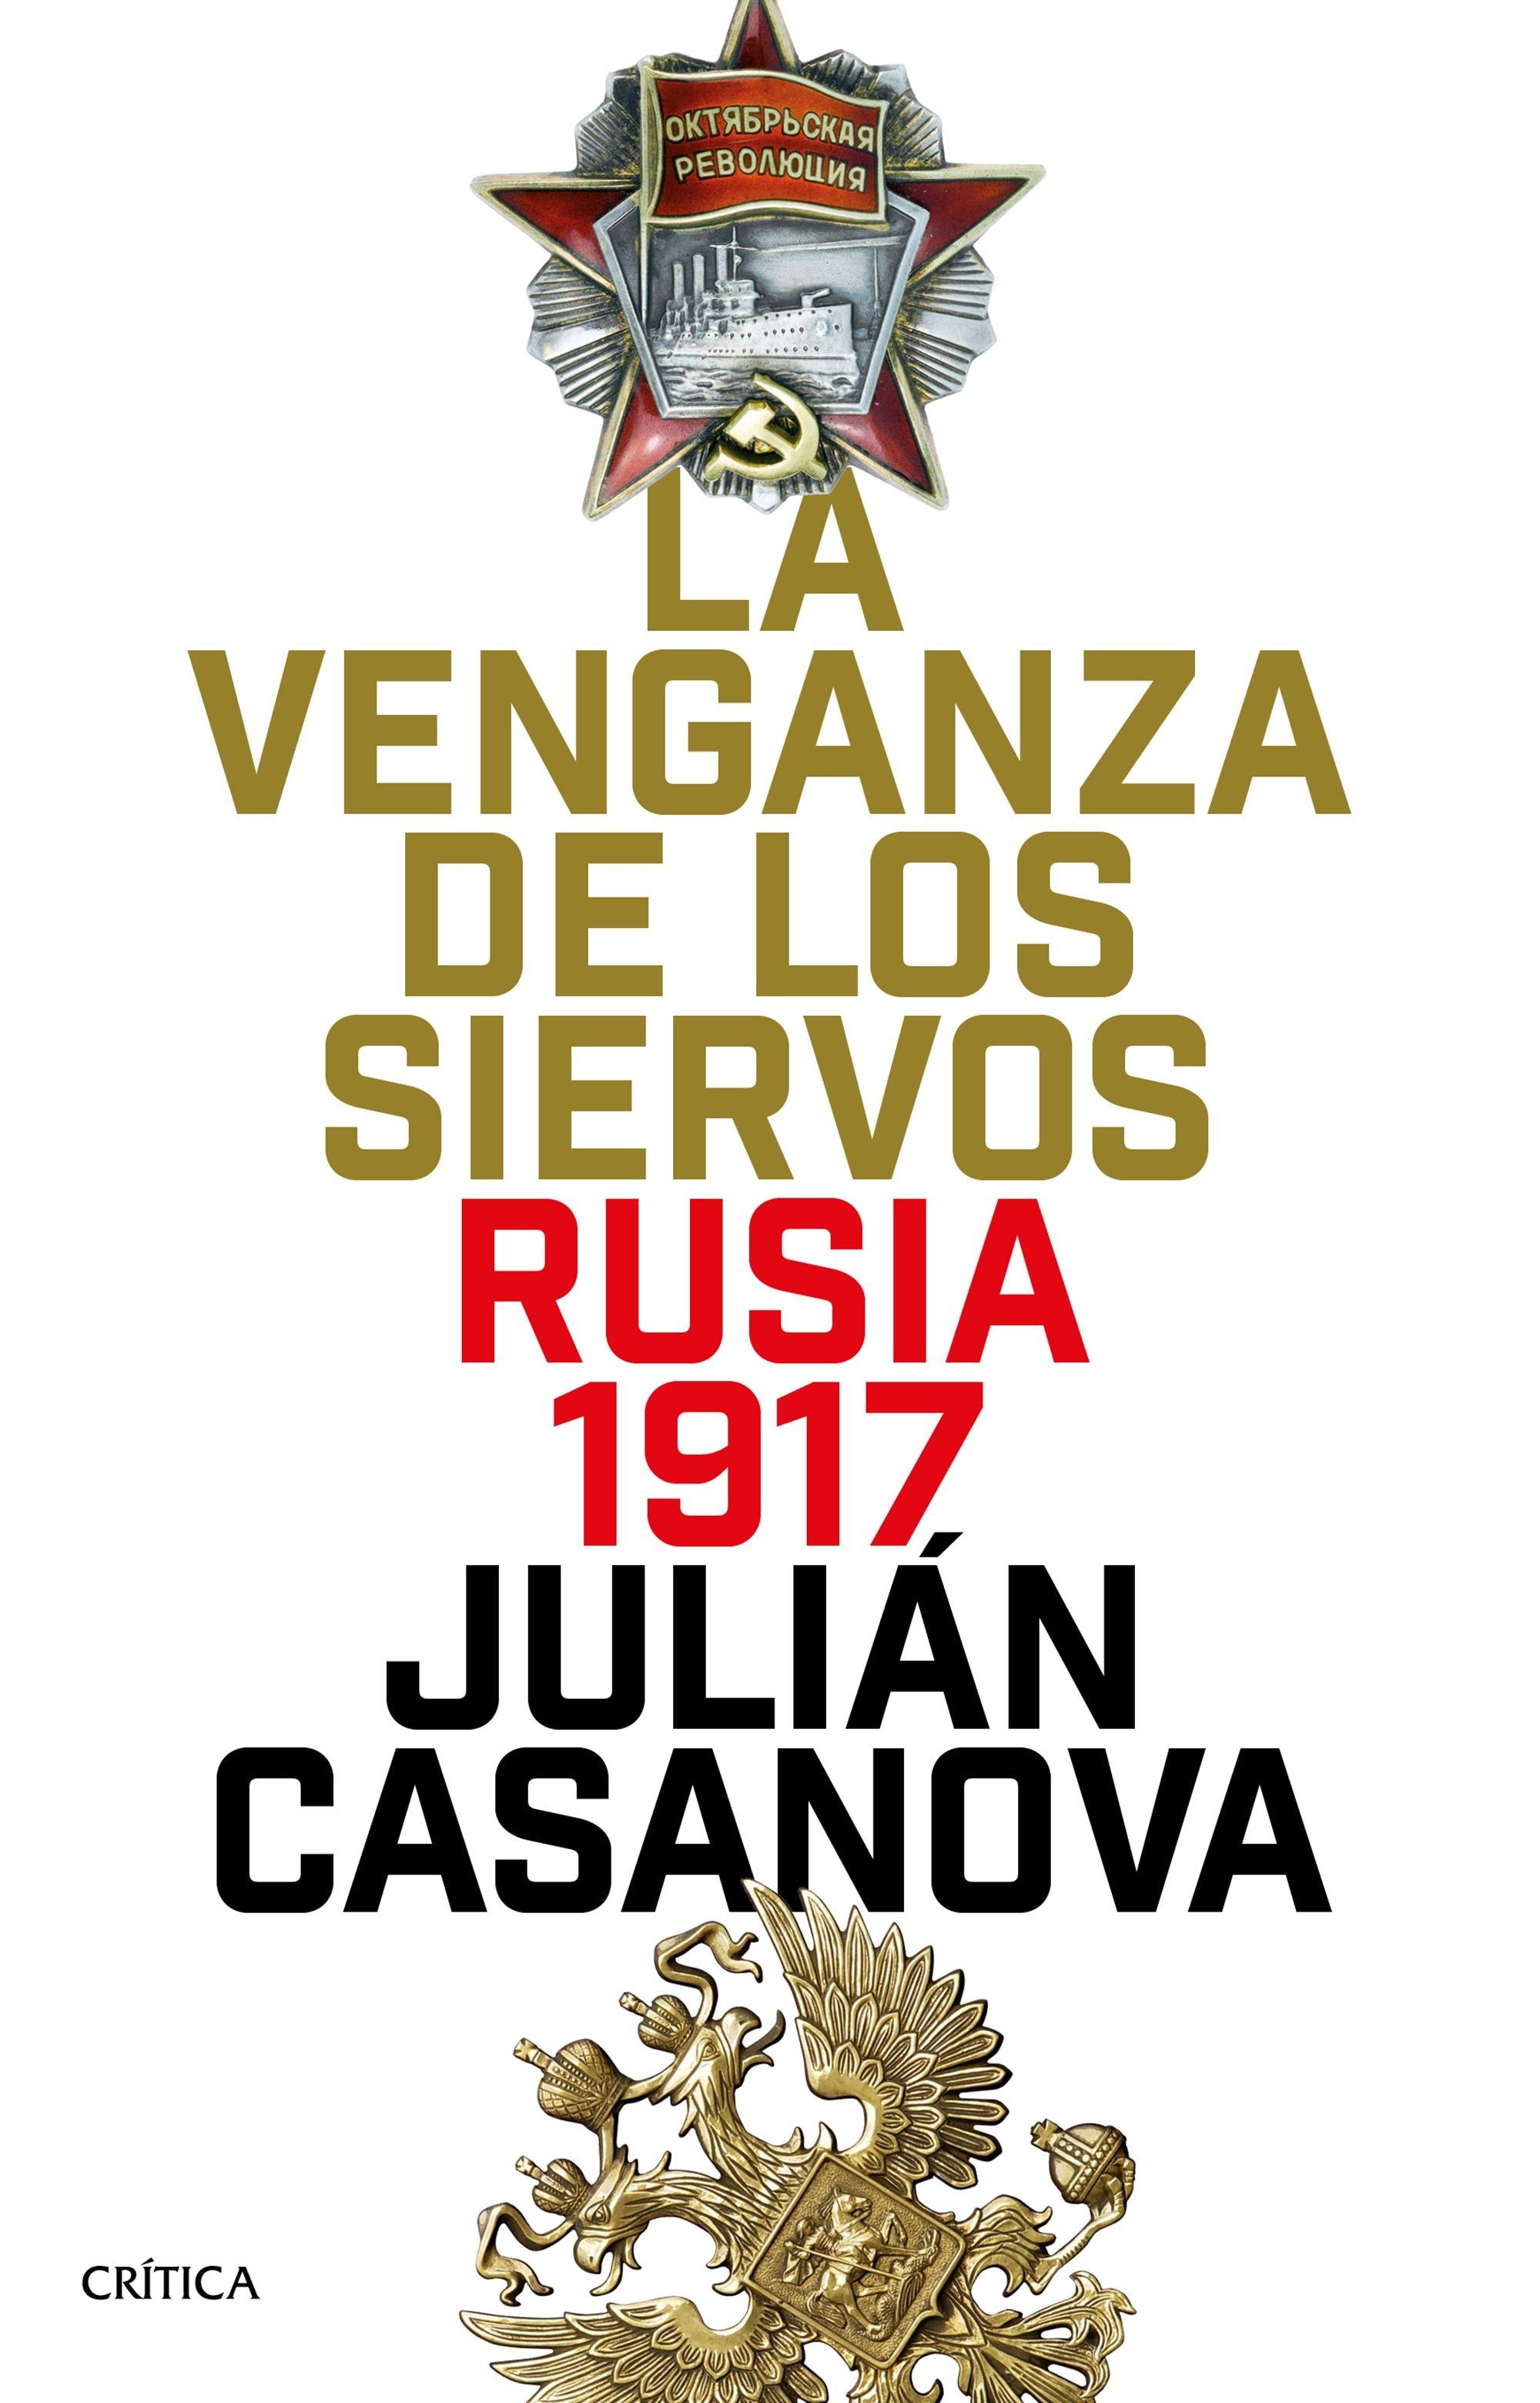 La Venganza de los Siervos "Rusia 1917". 